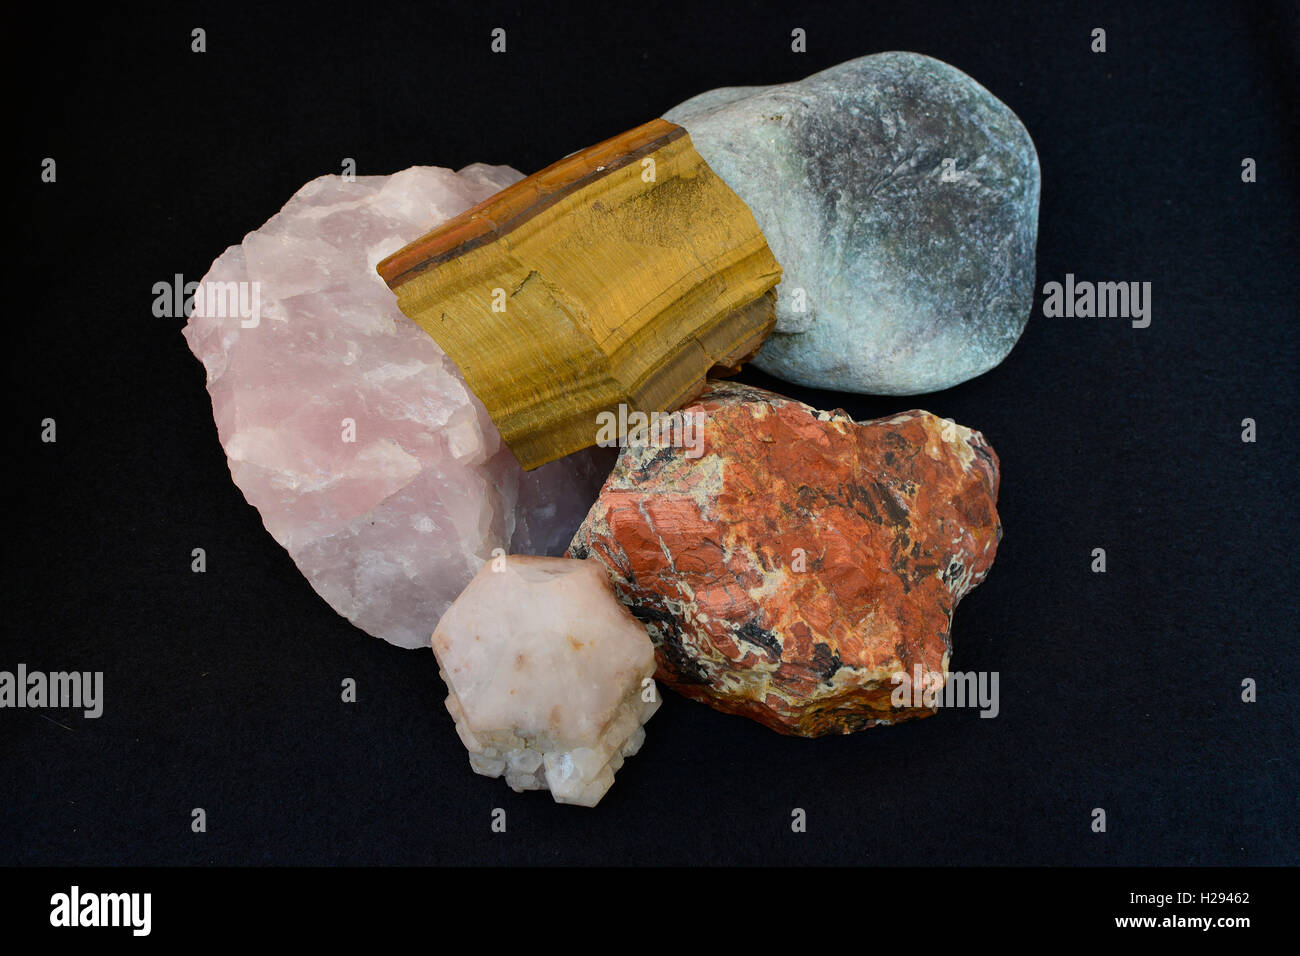 Diversified portfolio concept. Collection of semi precious stones. Stock Photo